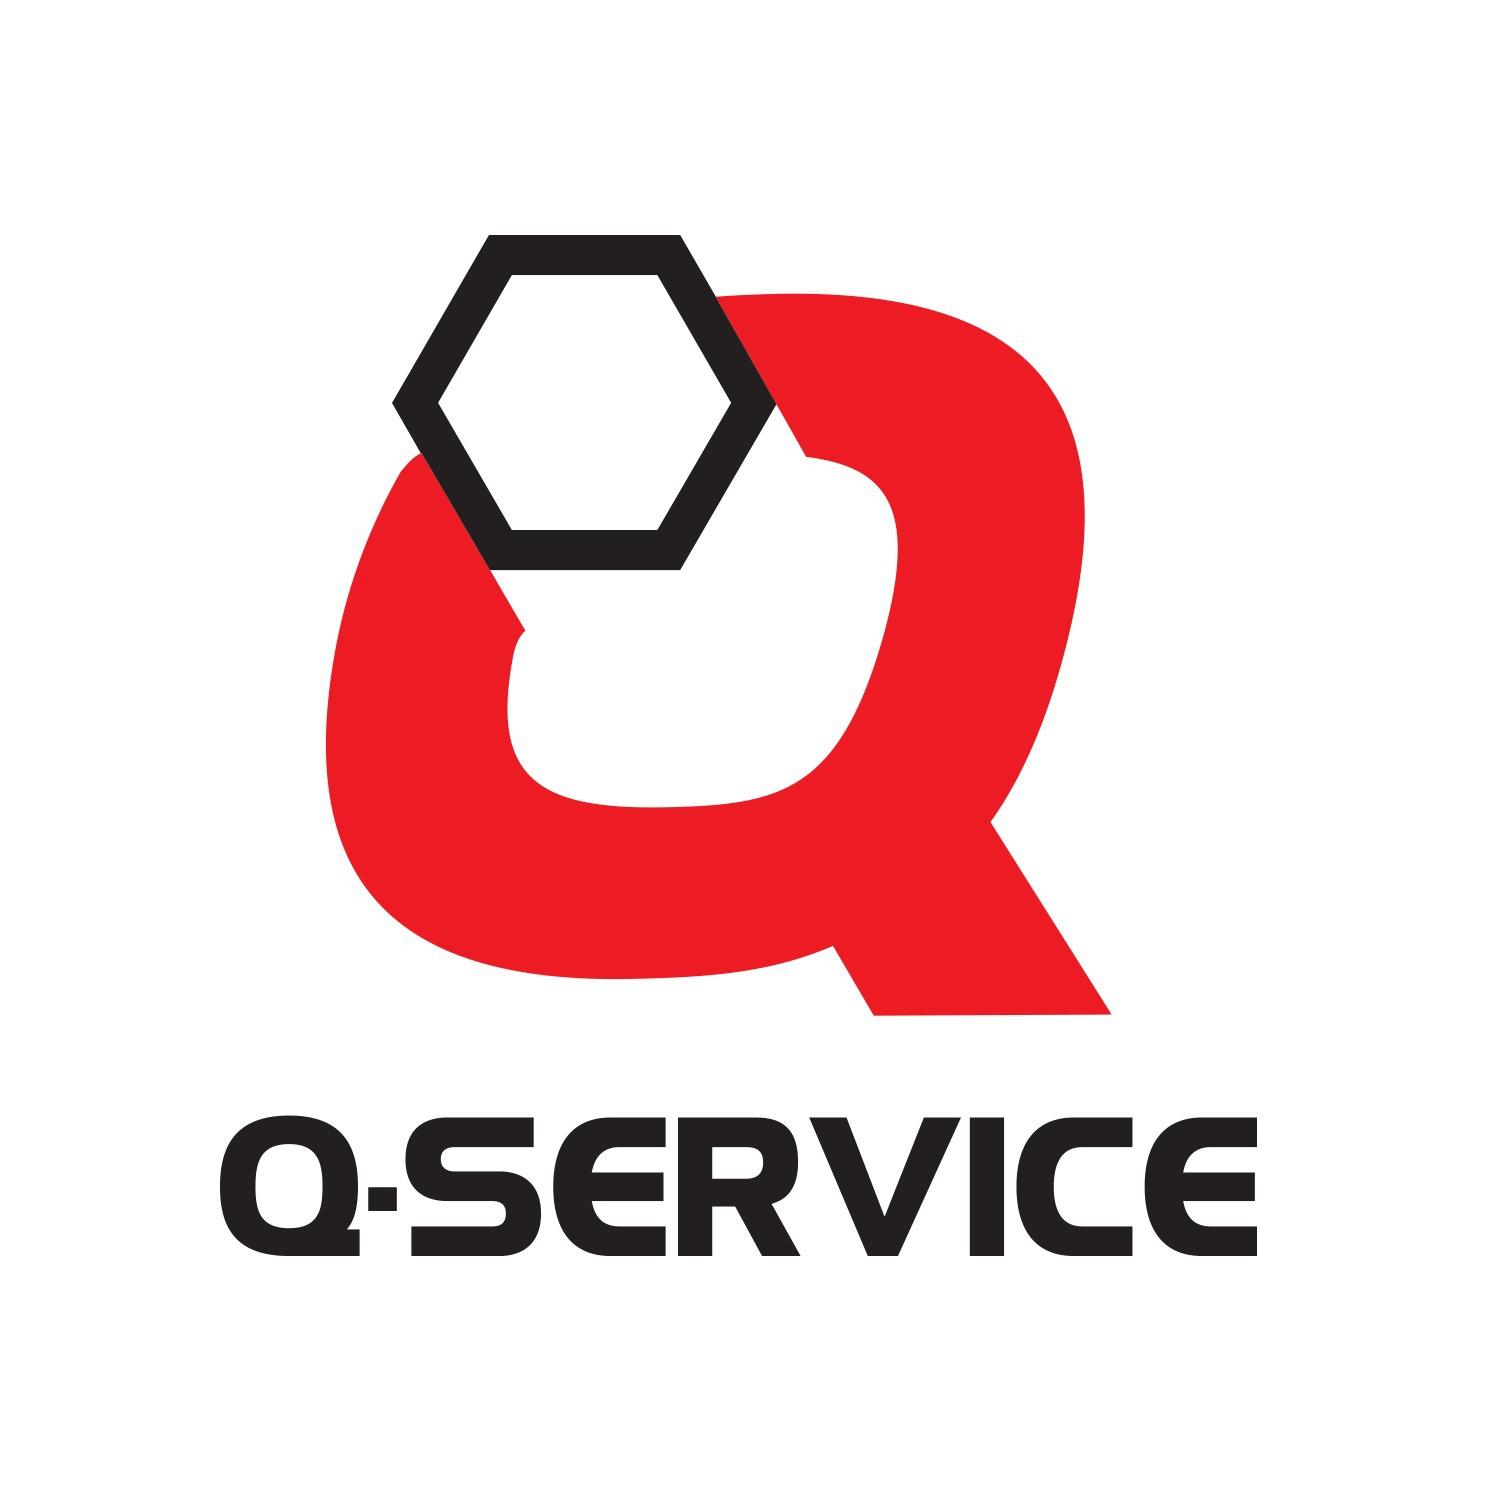 M-Autó Kaposvár - Q Service - Opel Járművekre Szakosodott Független Szervíz Logo